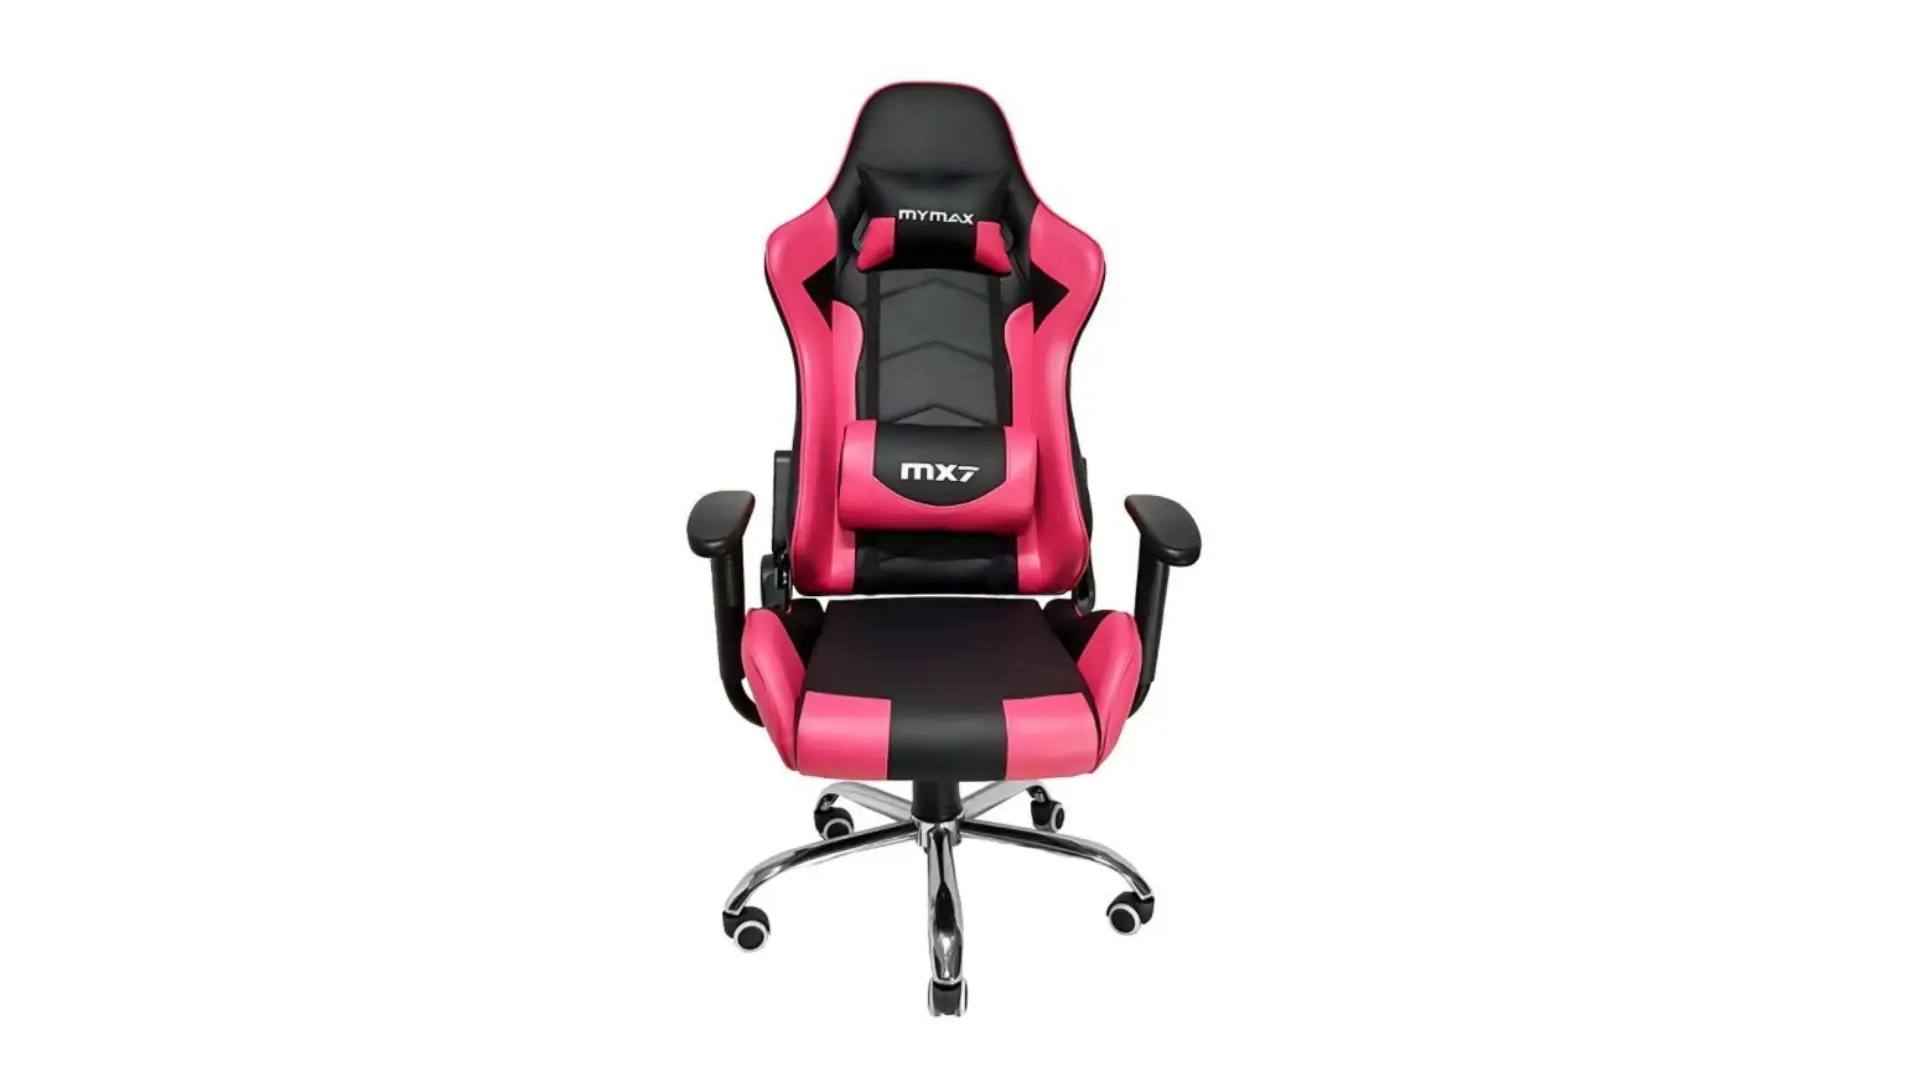 Cadeira preta e rosa MX7 Mymax no fundo branco